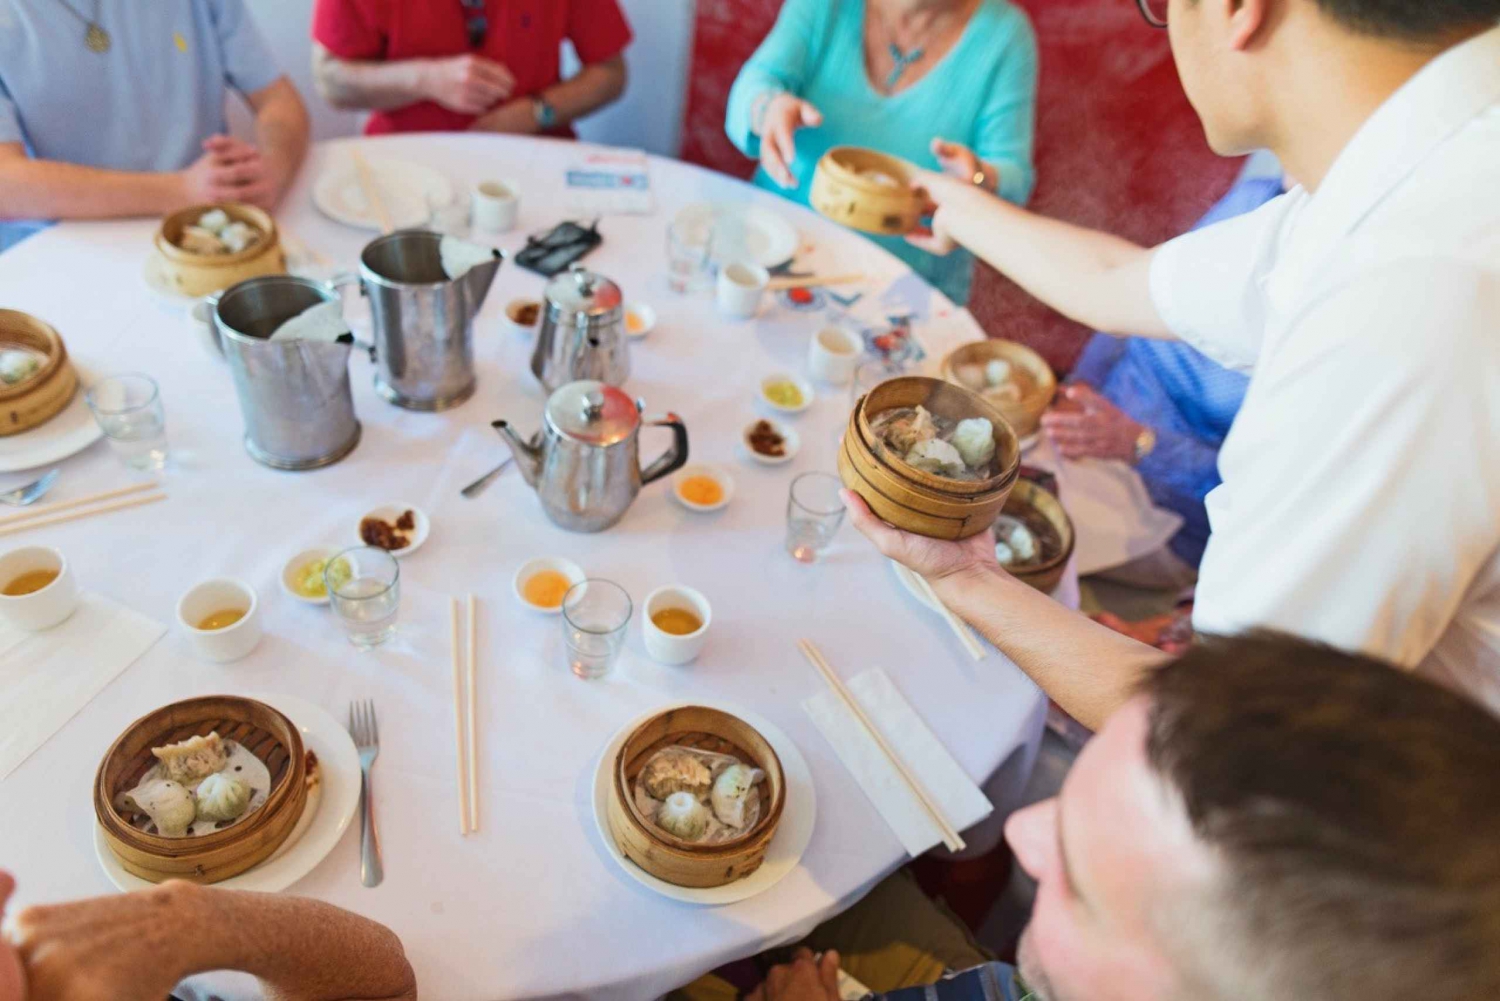 Gourmet Flavors of Chinatownin ruoka- ja kulttuurikävelyretki